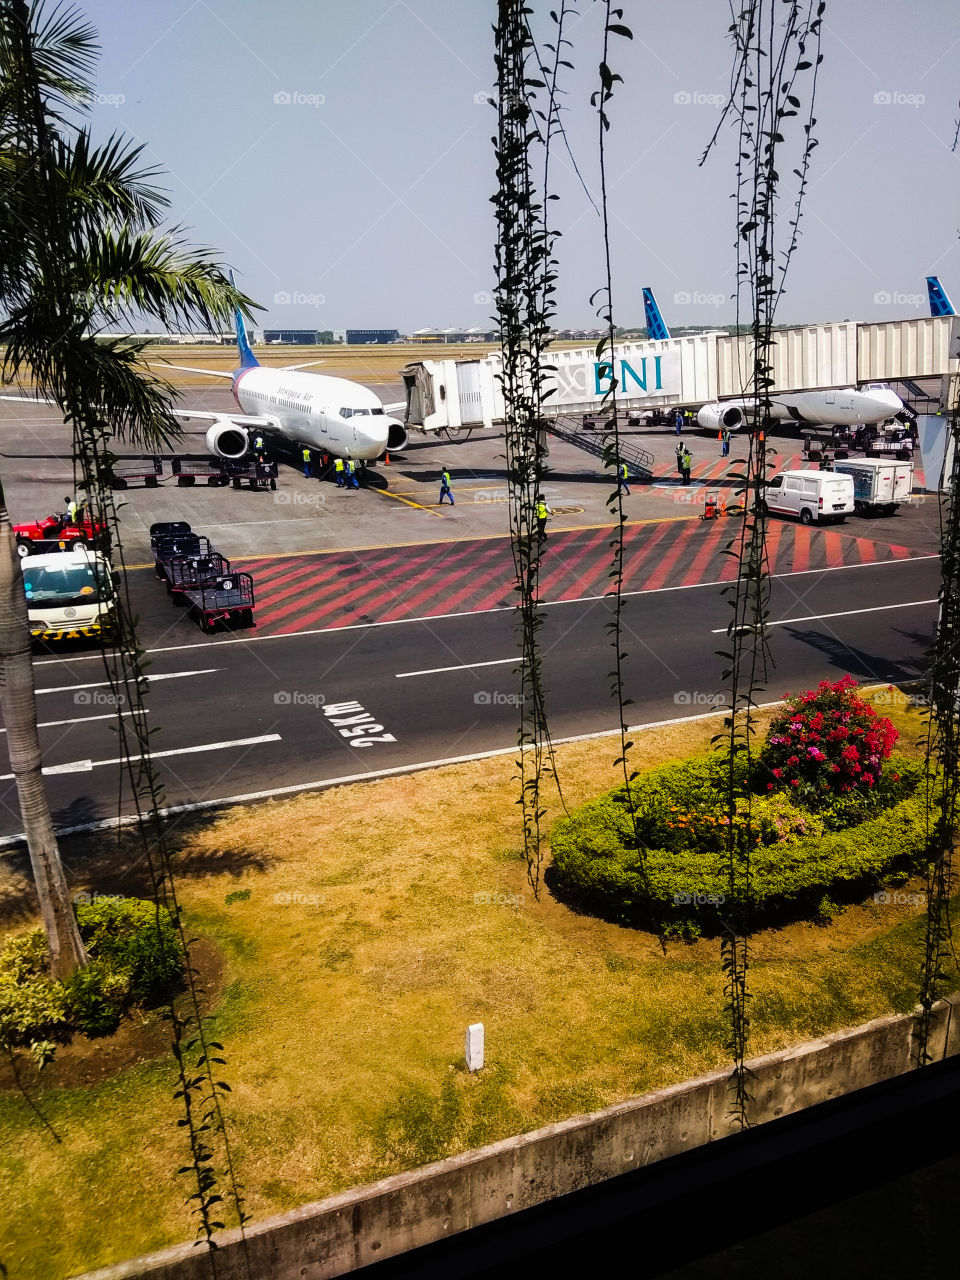 Juanda Airport of Surabaya